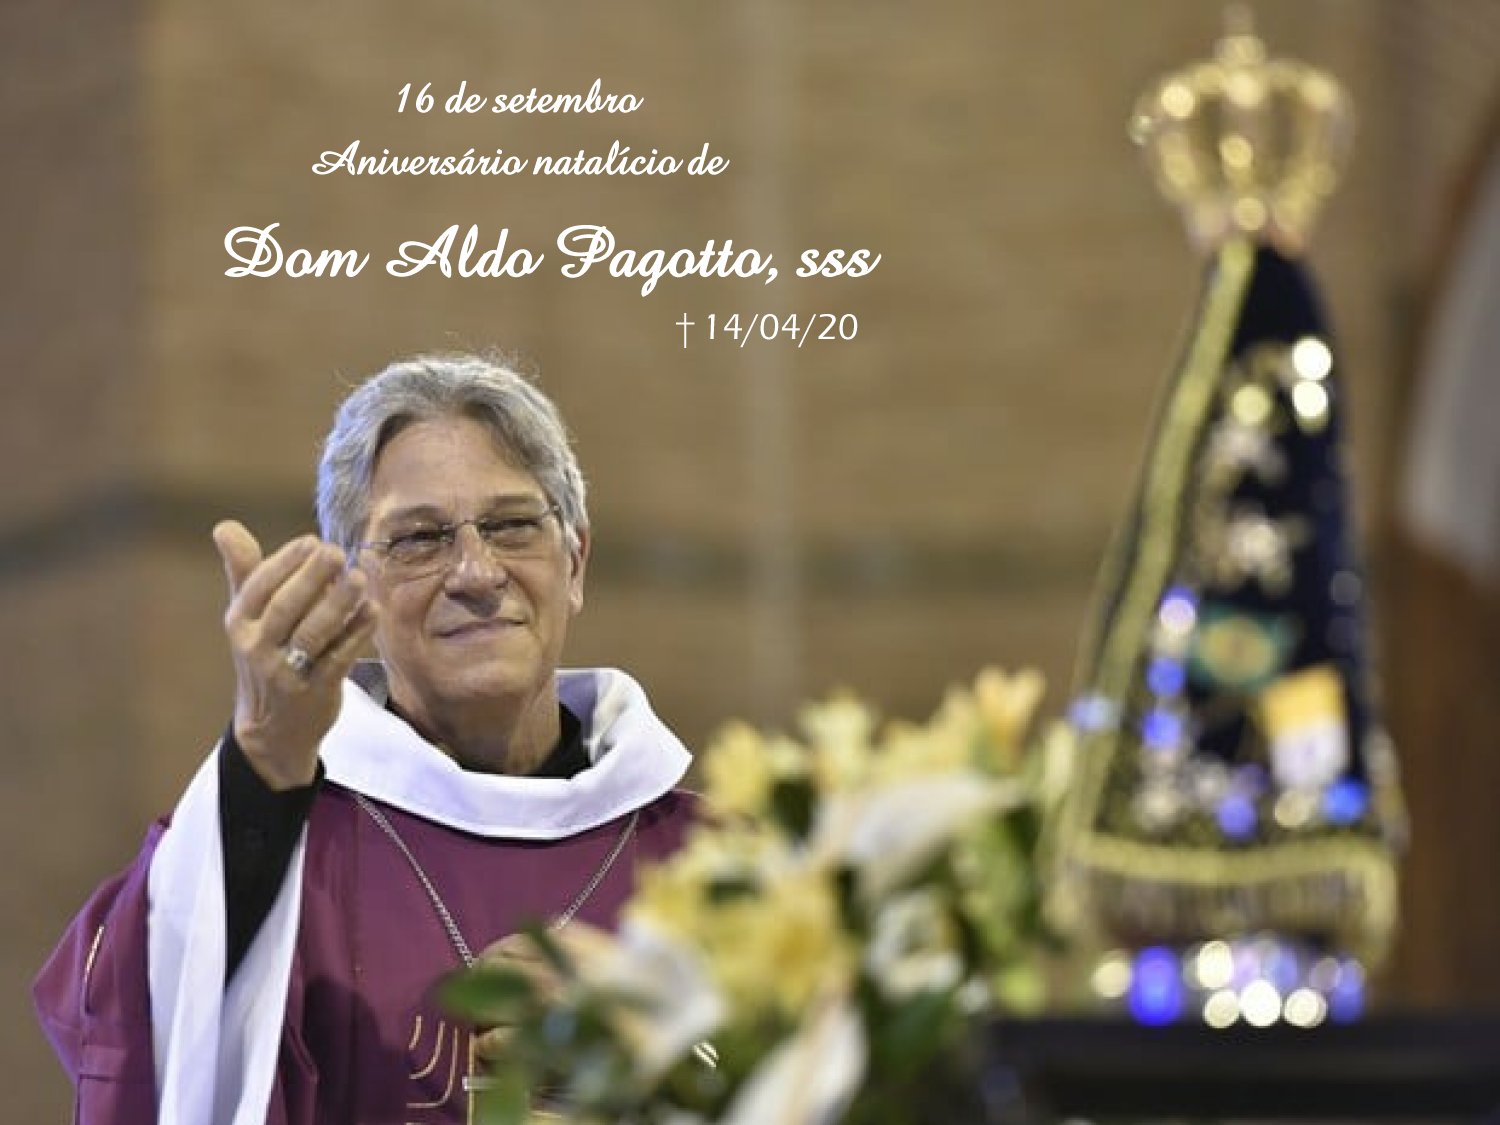 Nossas preces a Dom Aldo,sss neste dia de saudade e fé.